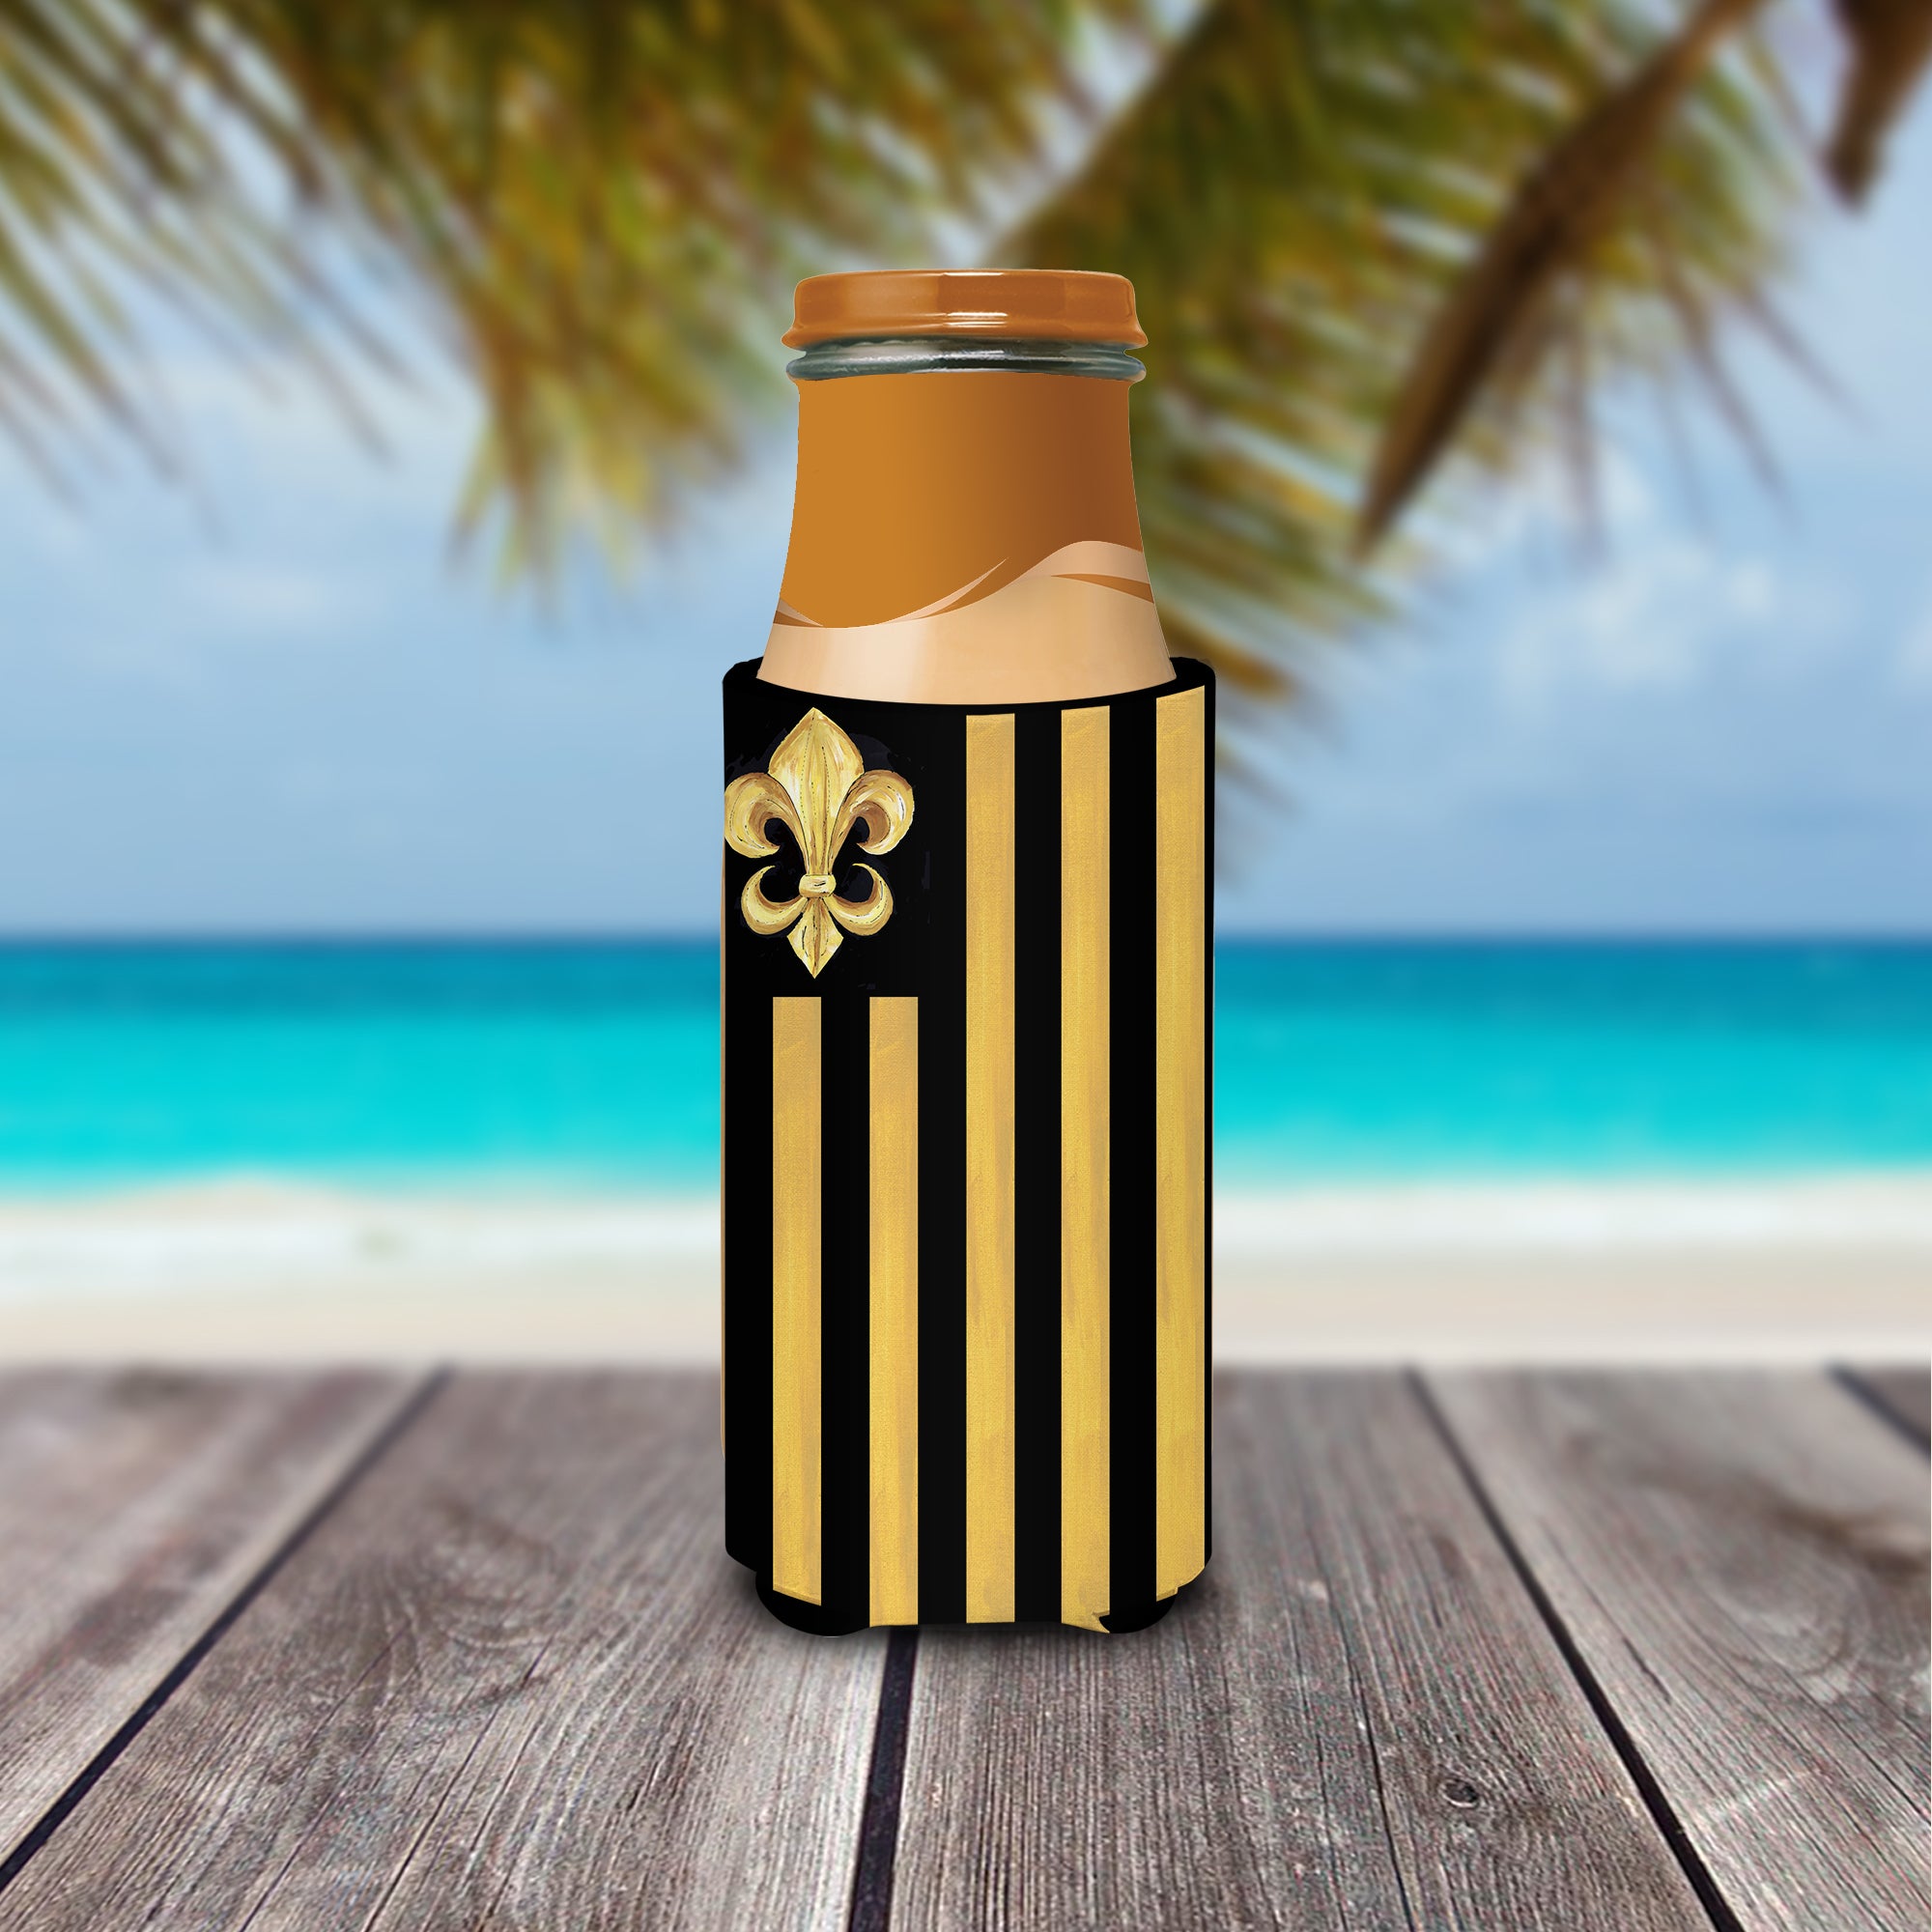 Black Gold Fleur de lis Nation Ultra Beverage Insulators for slim cans 8198MUK.